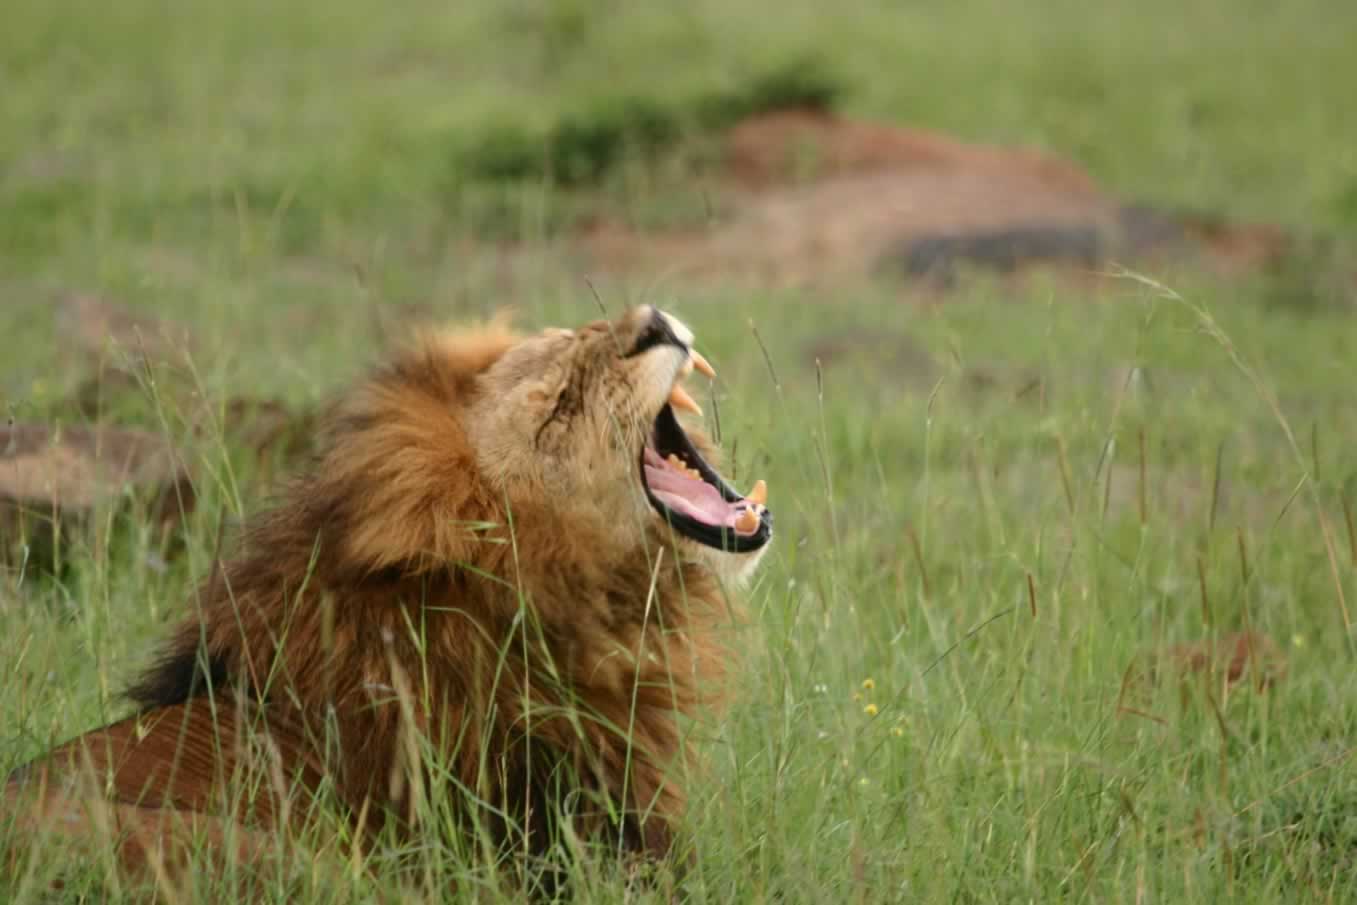 Explorer Kenya Safaris | Kenya Safari Holidays